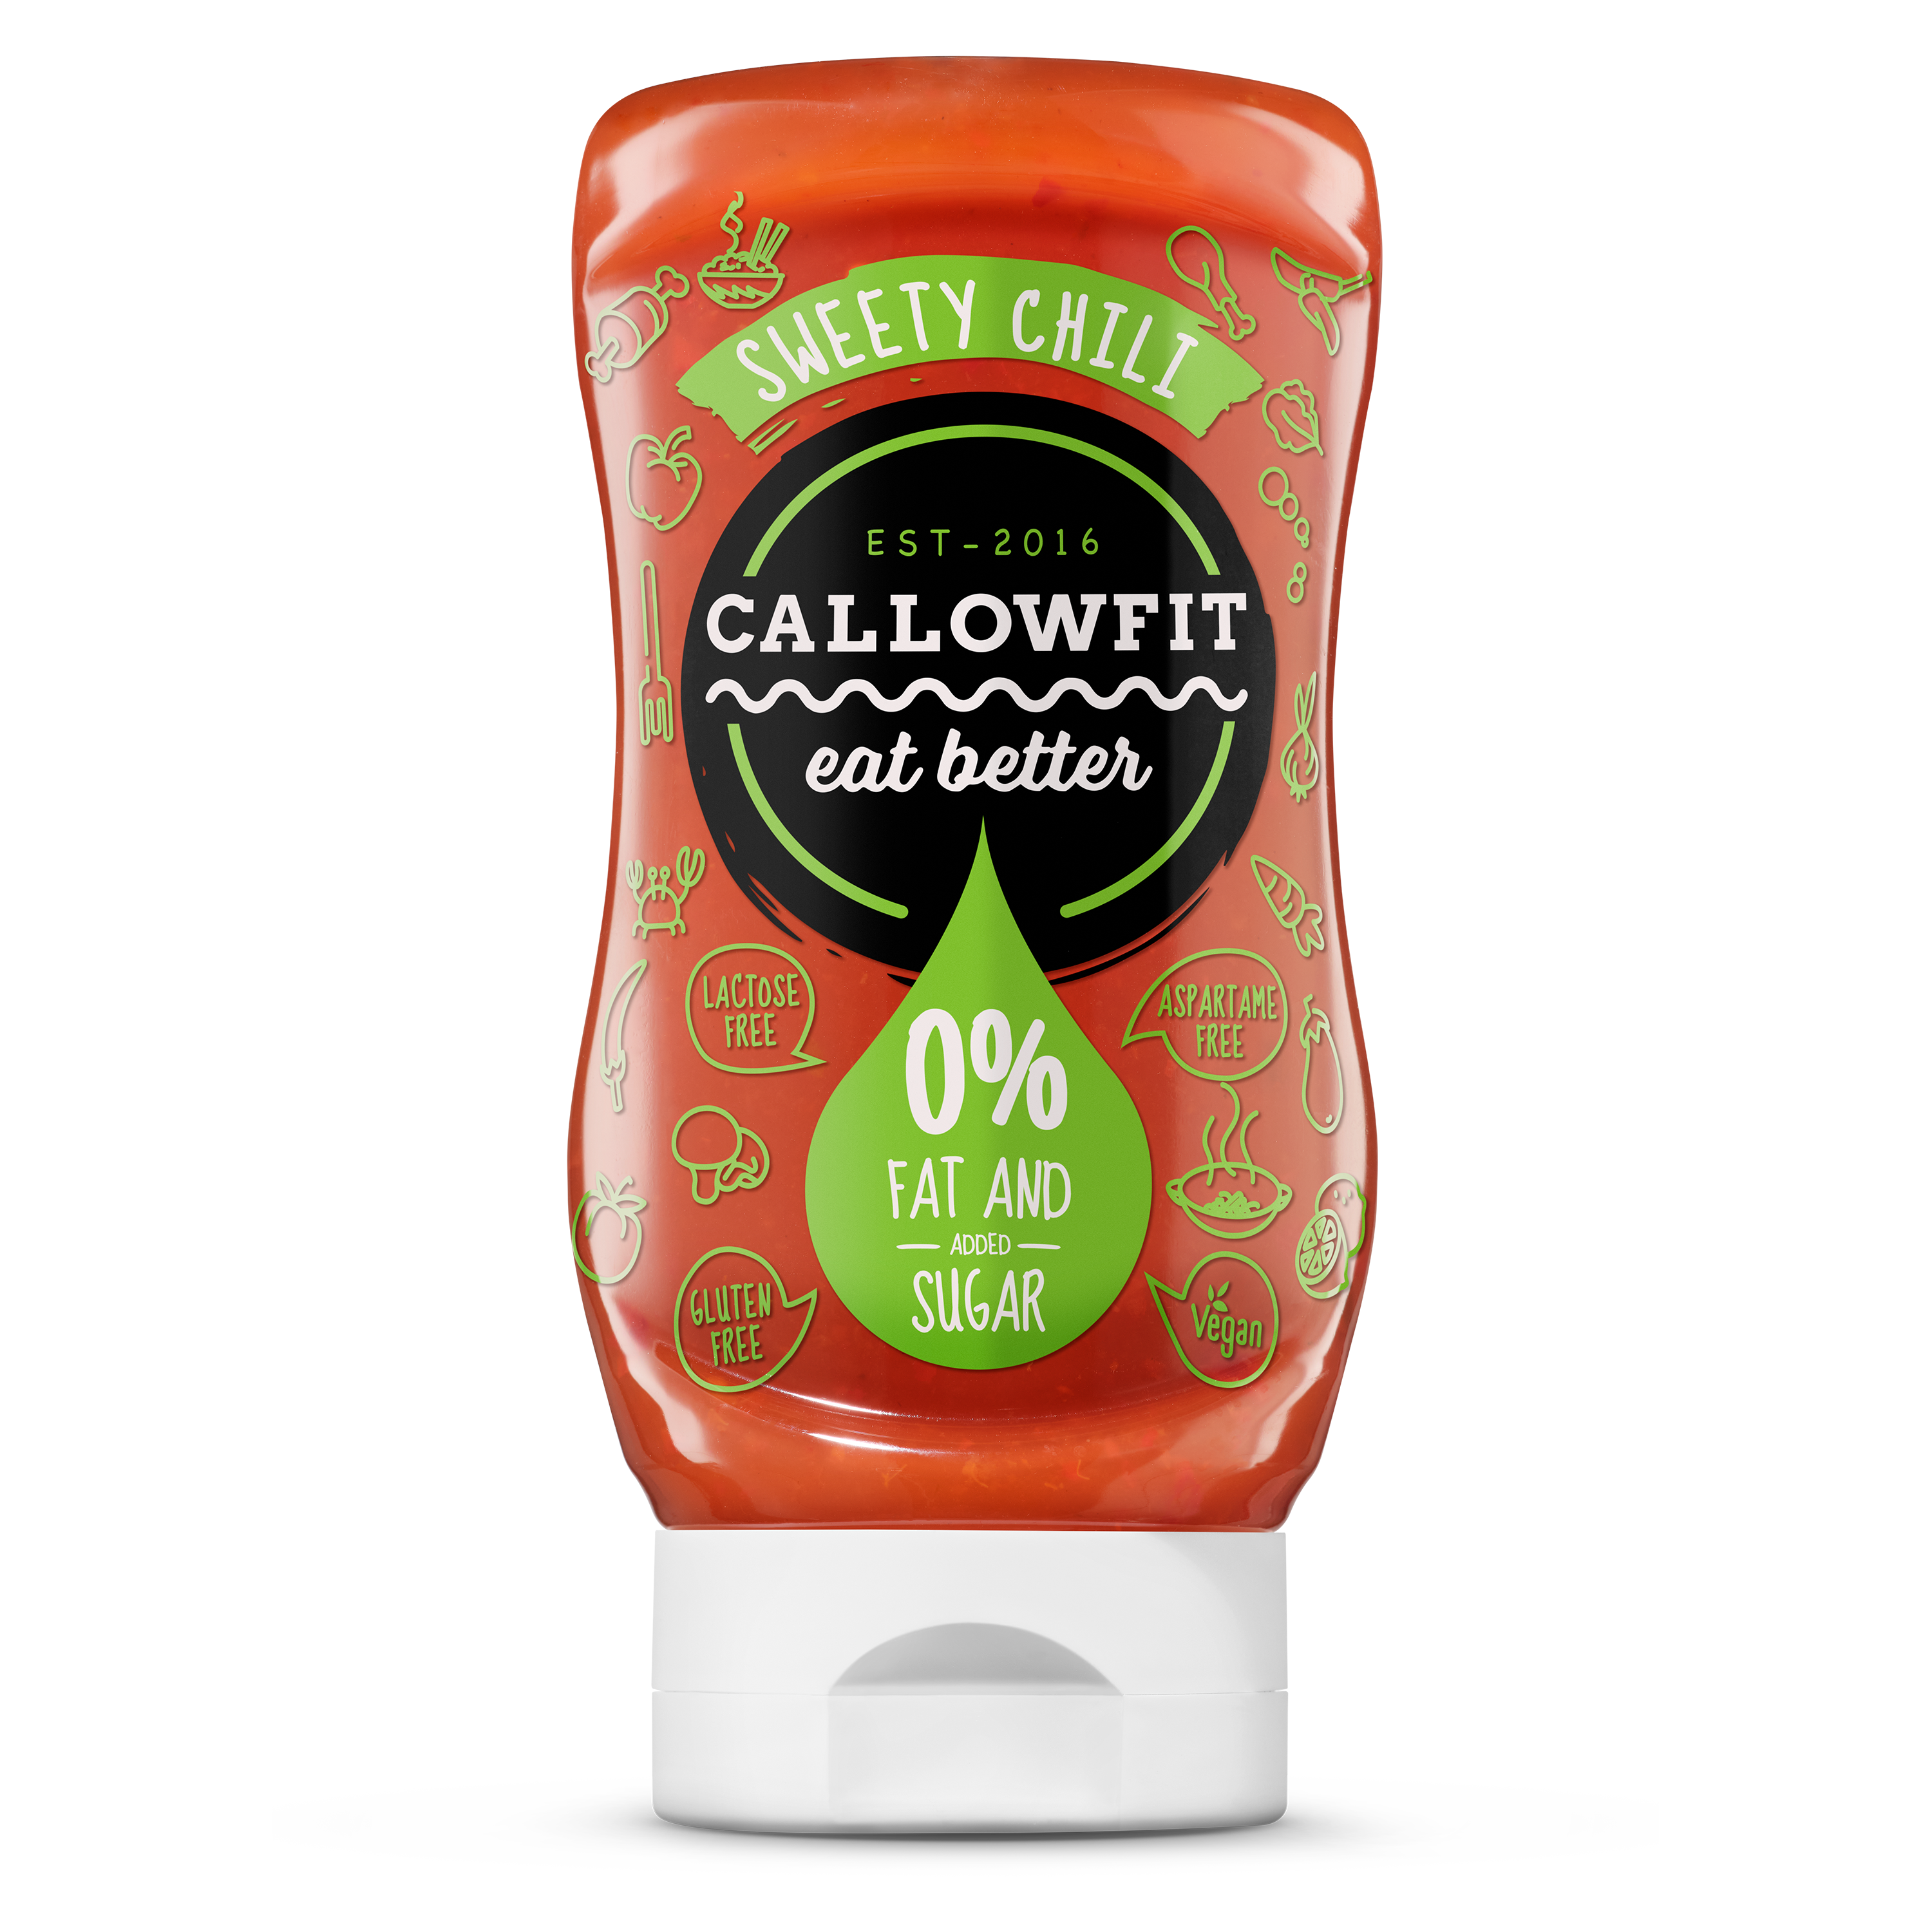 CALLOWFIT Sauce im Geschmack Sweety Chili mit 0% Fett und Zucker in einer Tube mit bunten Aufdruck.